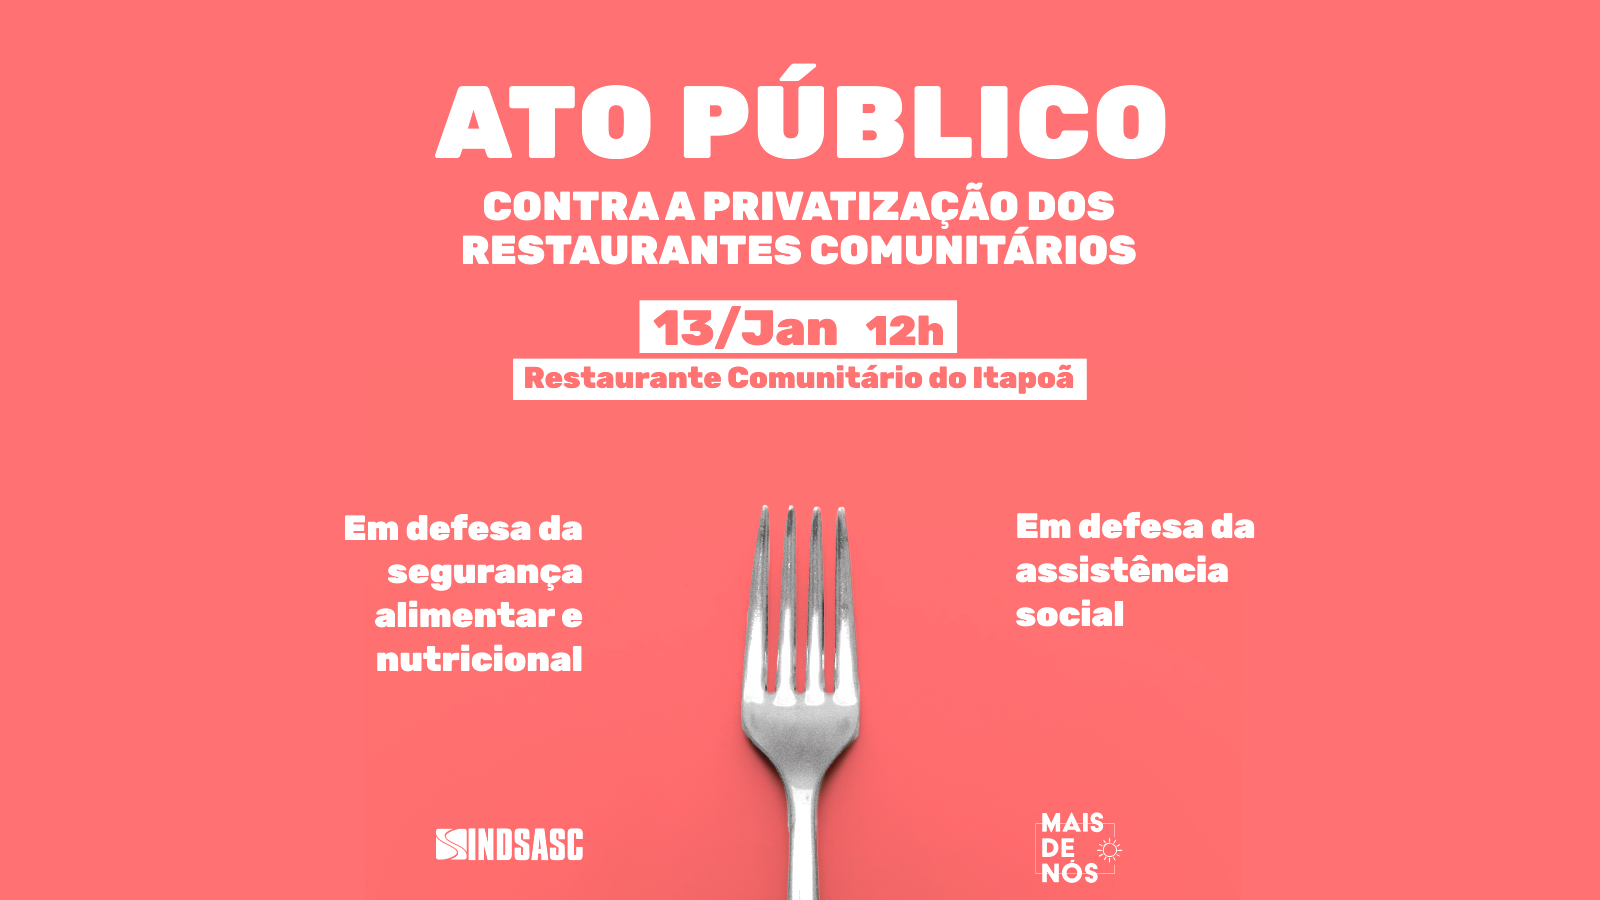 Dia 13 tem ato público contra a privatização dos restaurantes comunitários